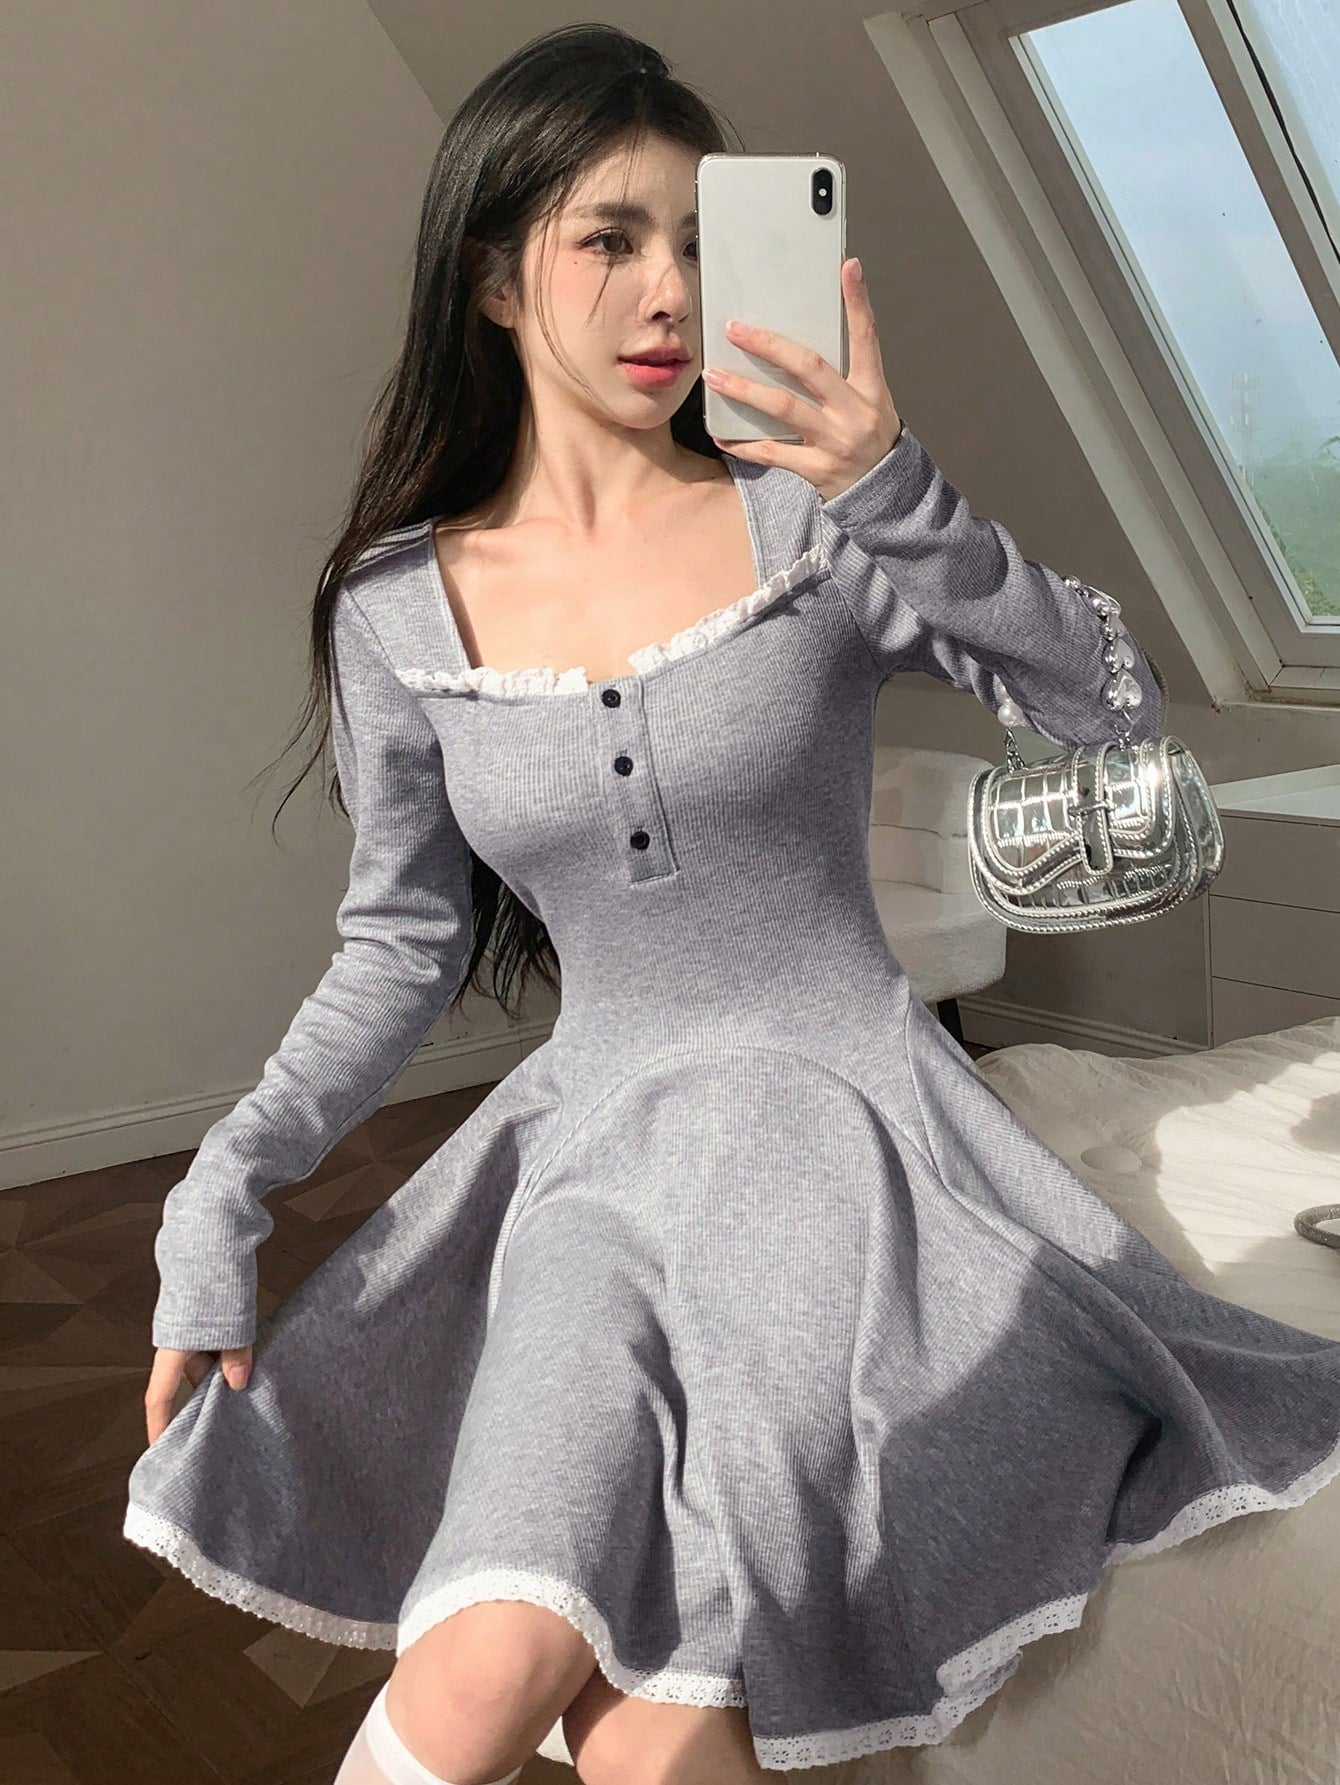 Contrast Lace Trim Button Front Dress – DAZY